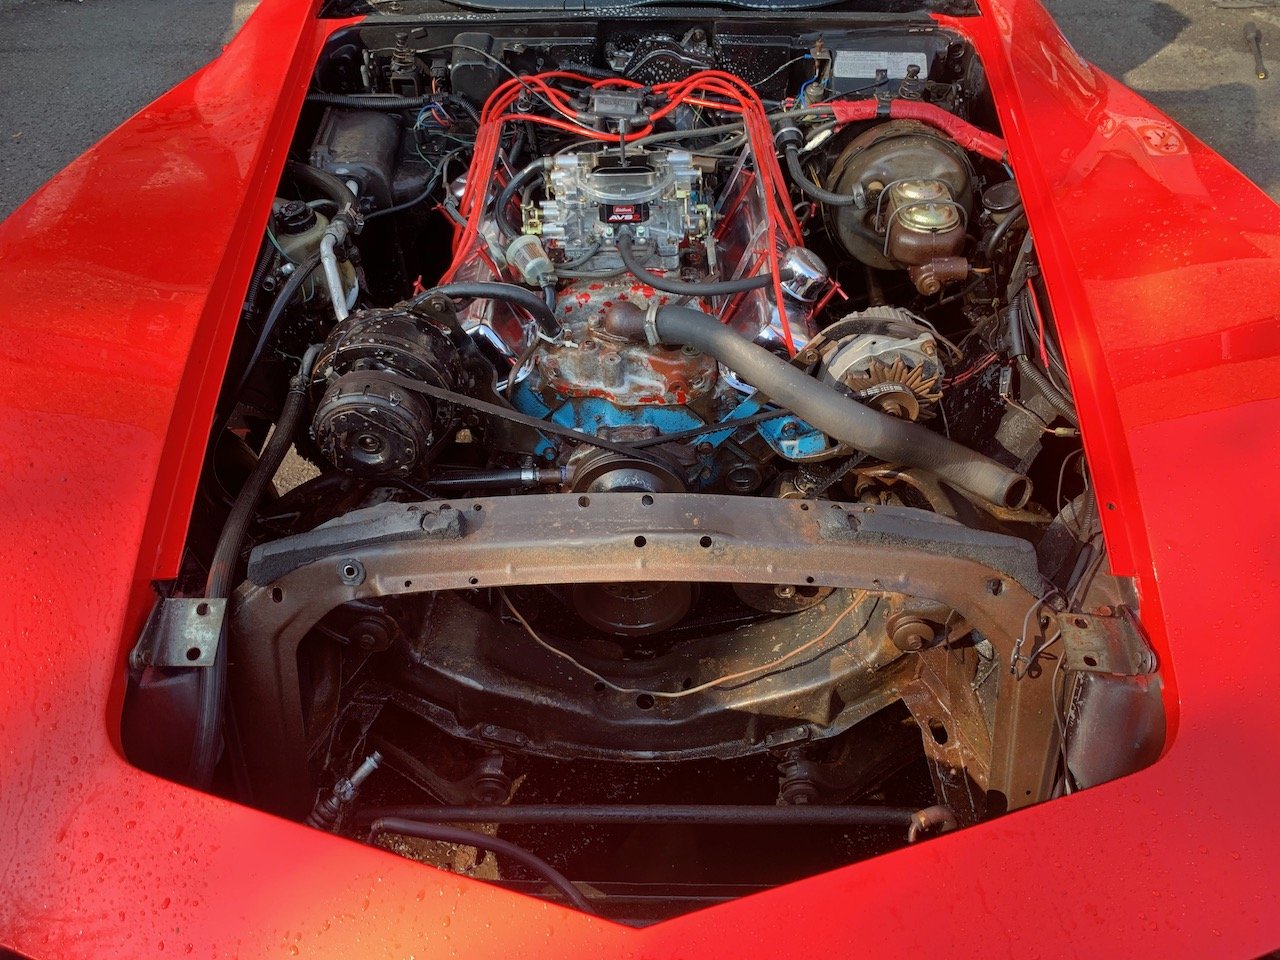 26 1978 Corvette C3 V.I.N.- 1Z87L8S4Q3063 - VALLIstore.jpeg